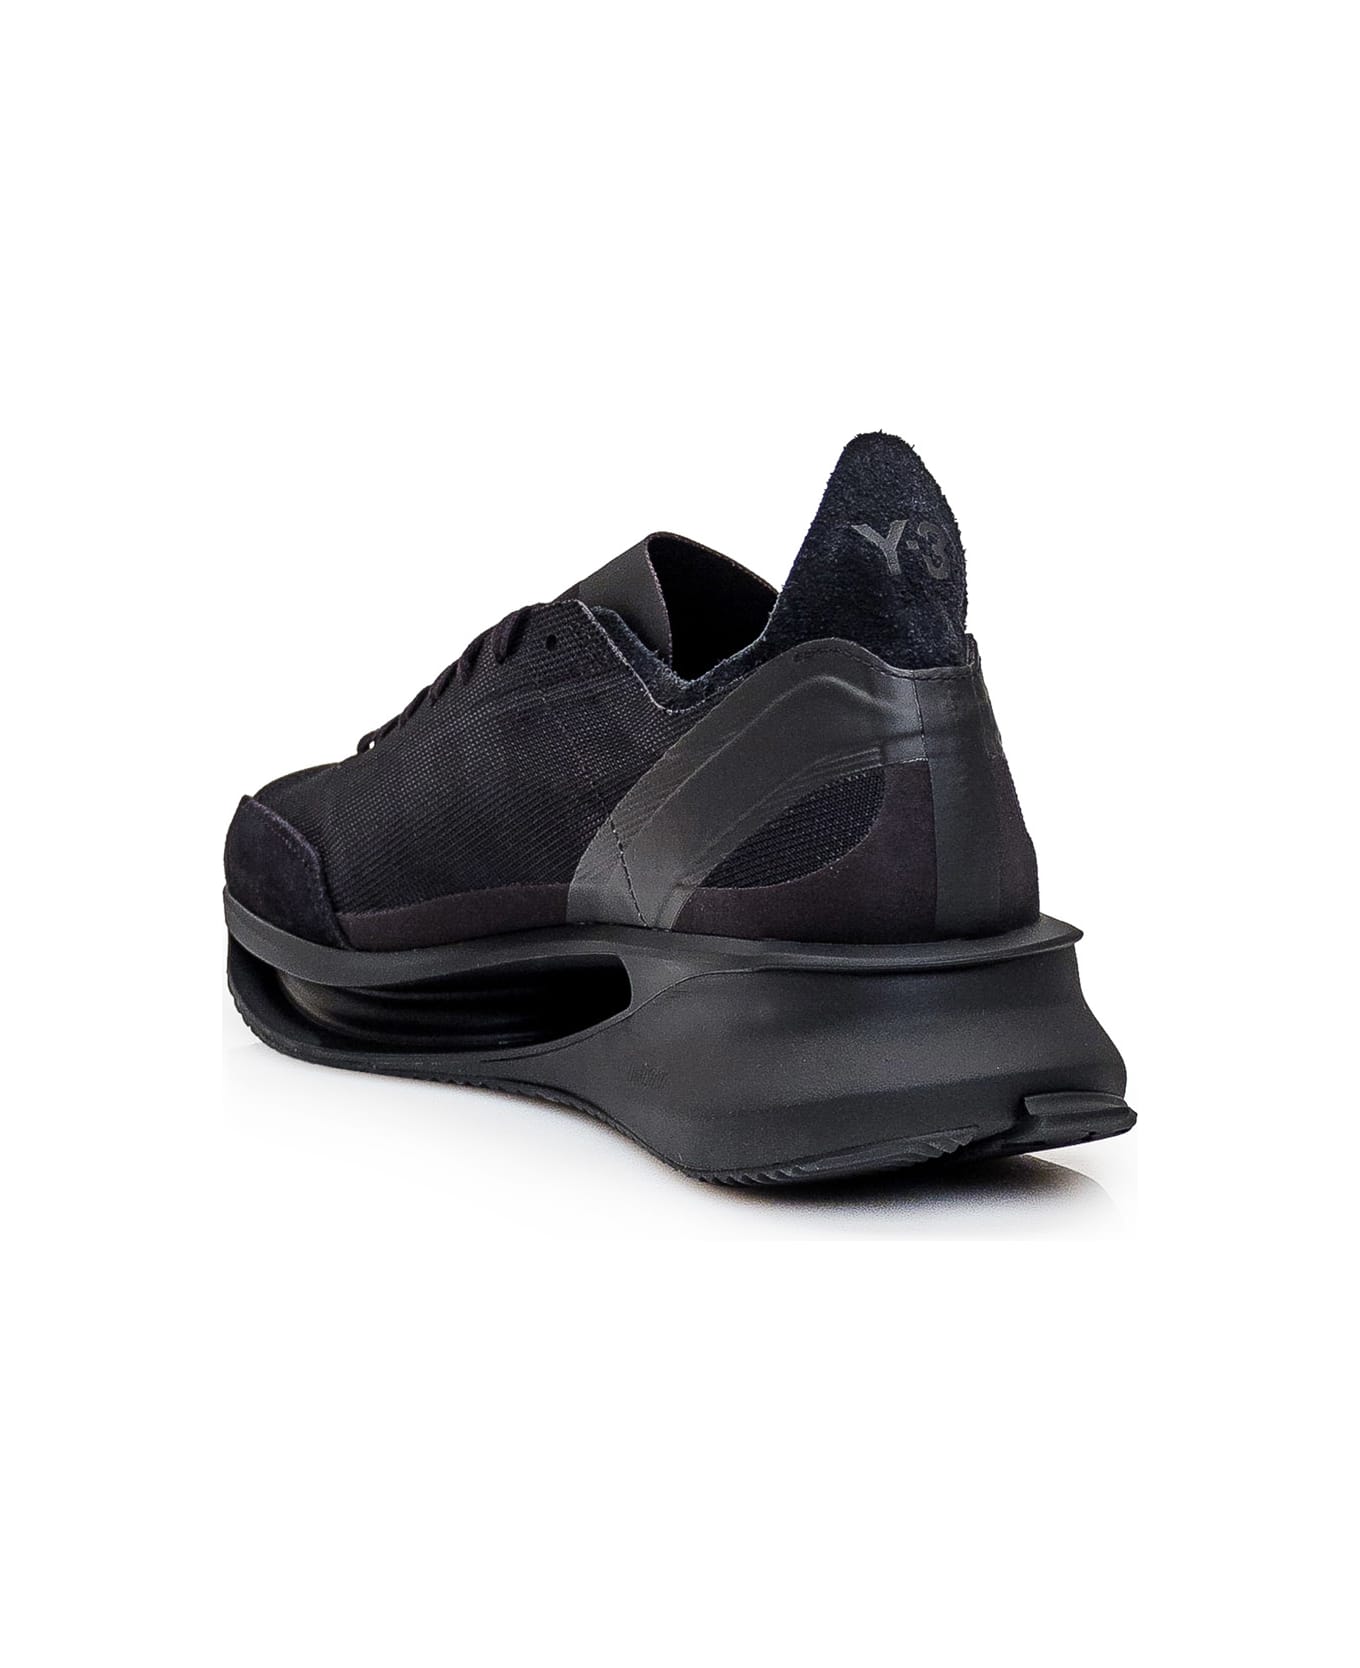 Y-3 Gendo Run Sneaker - BLACK/BLACK/BLACK スニーカー